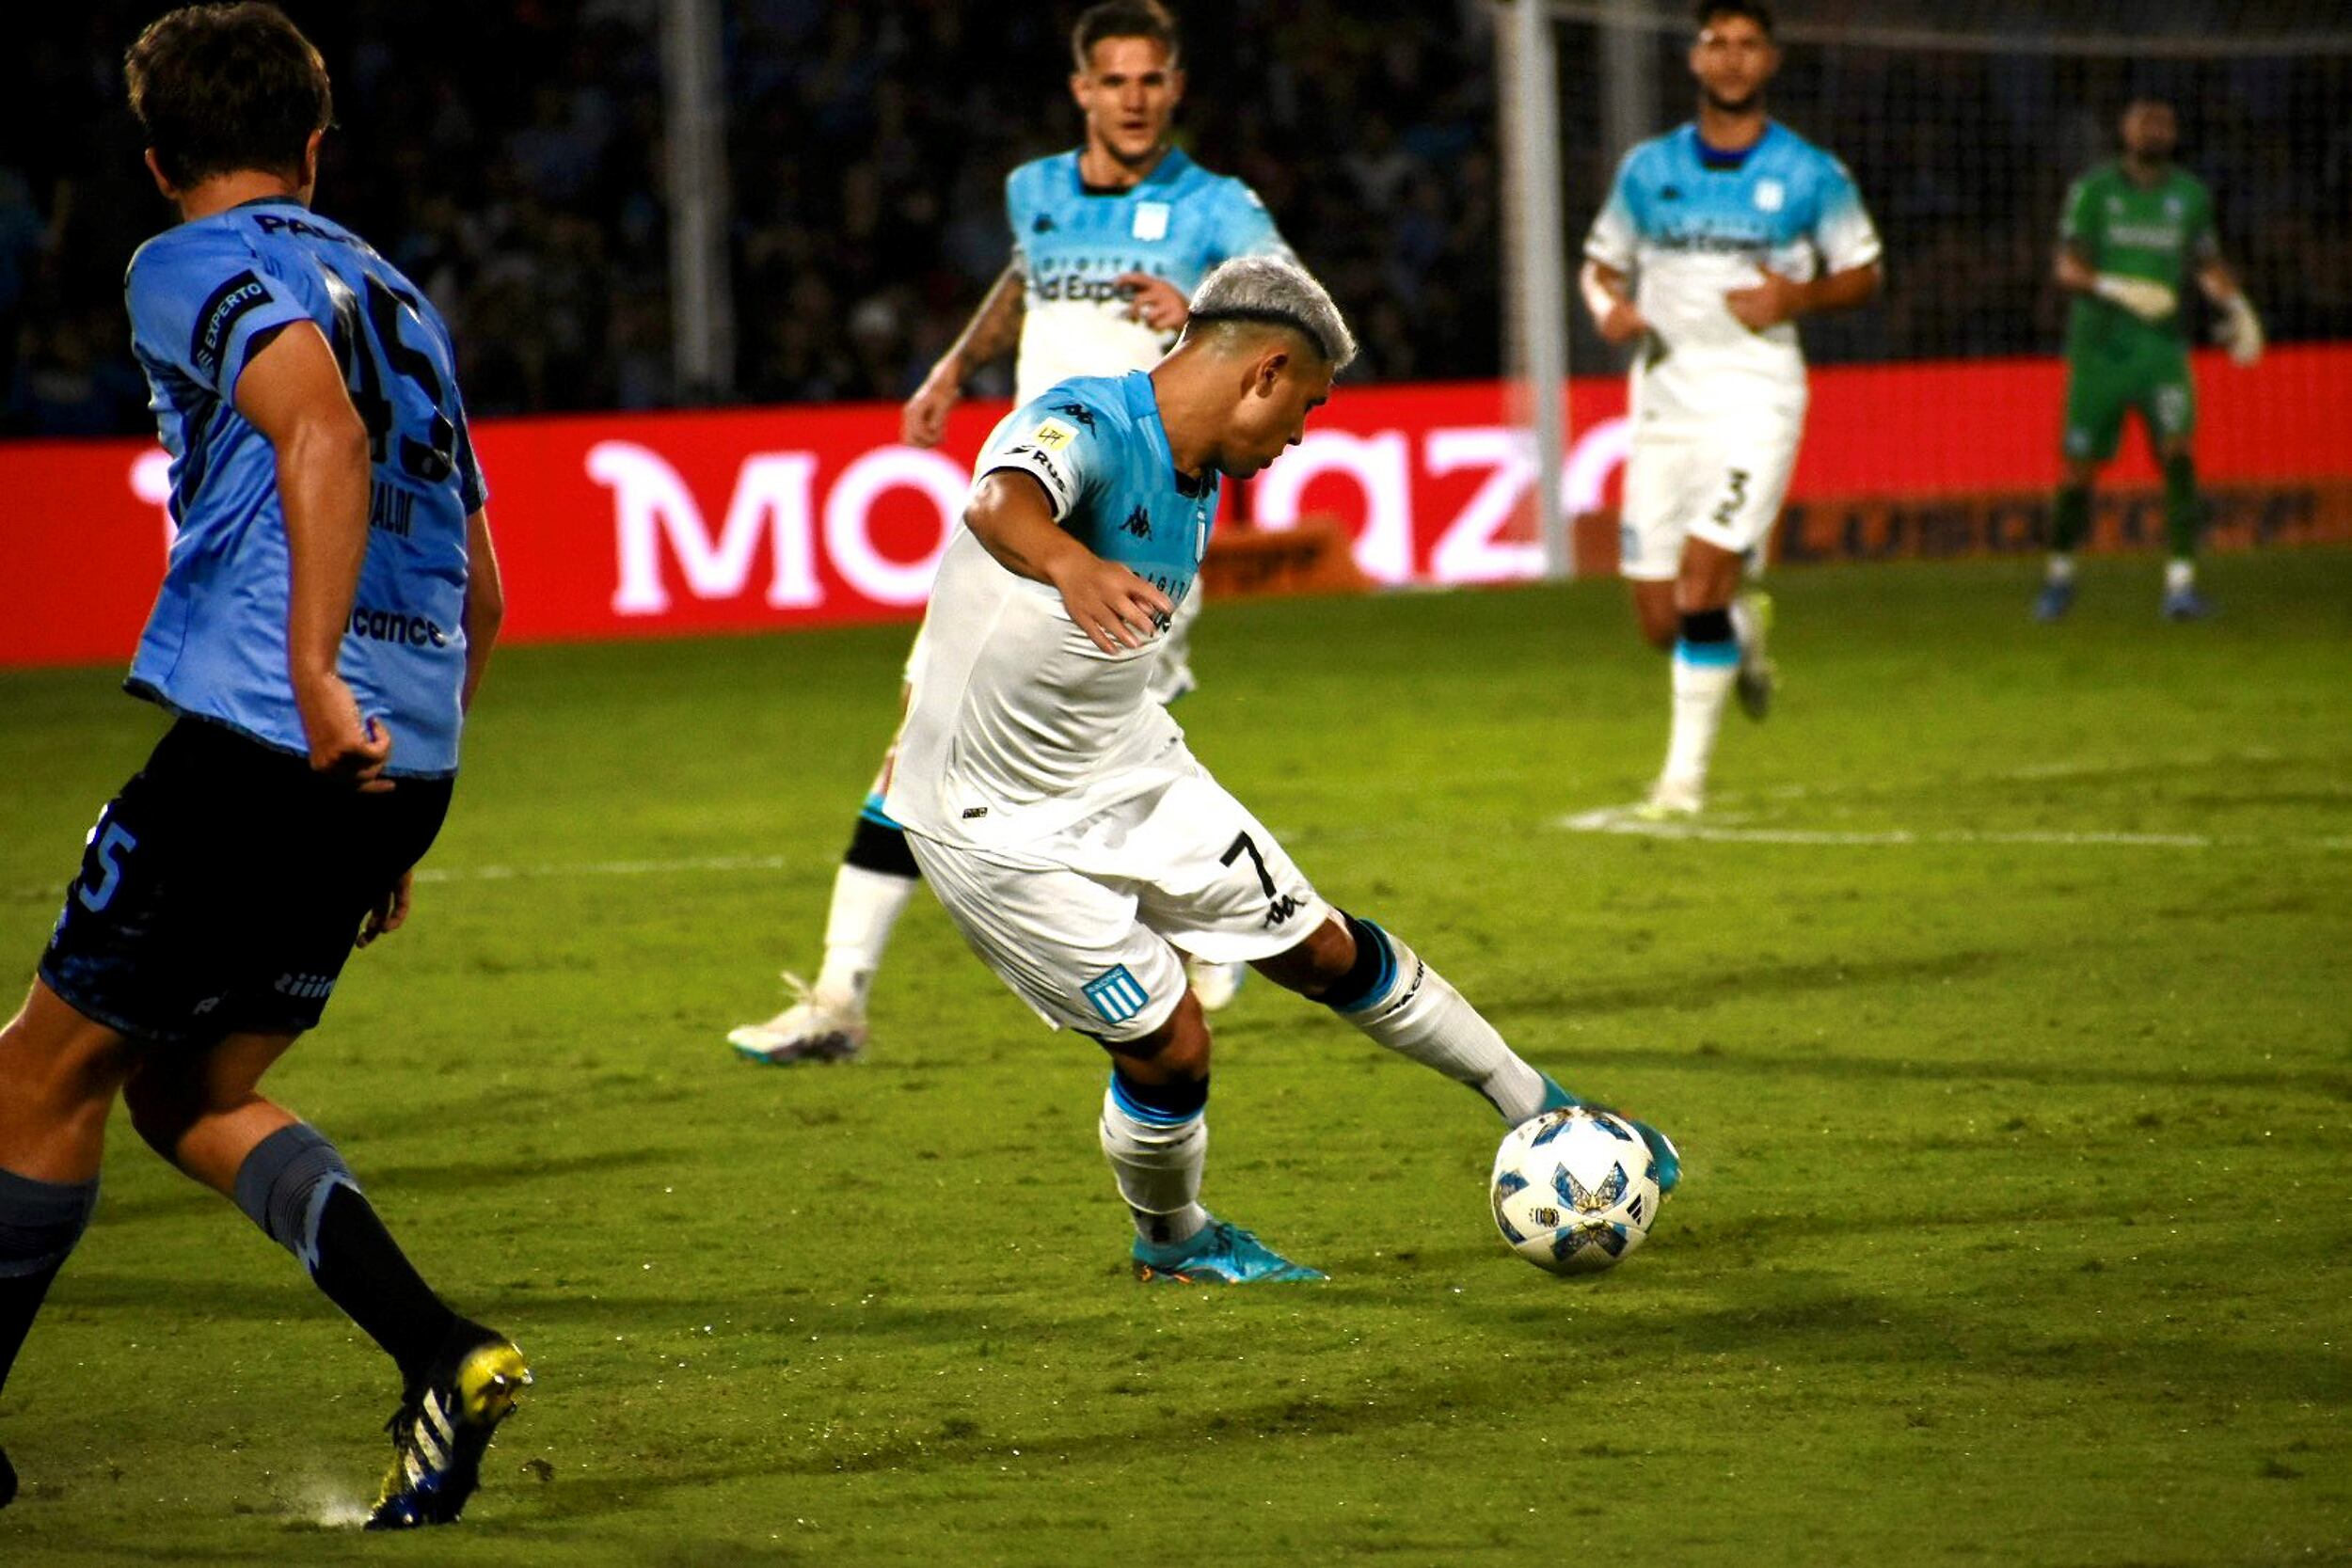 Racing goleó a Belgrano en Córdoba, pero no alcanzó los cuartos de final de la Copa de la Liga